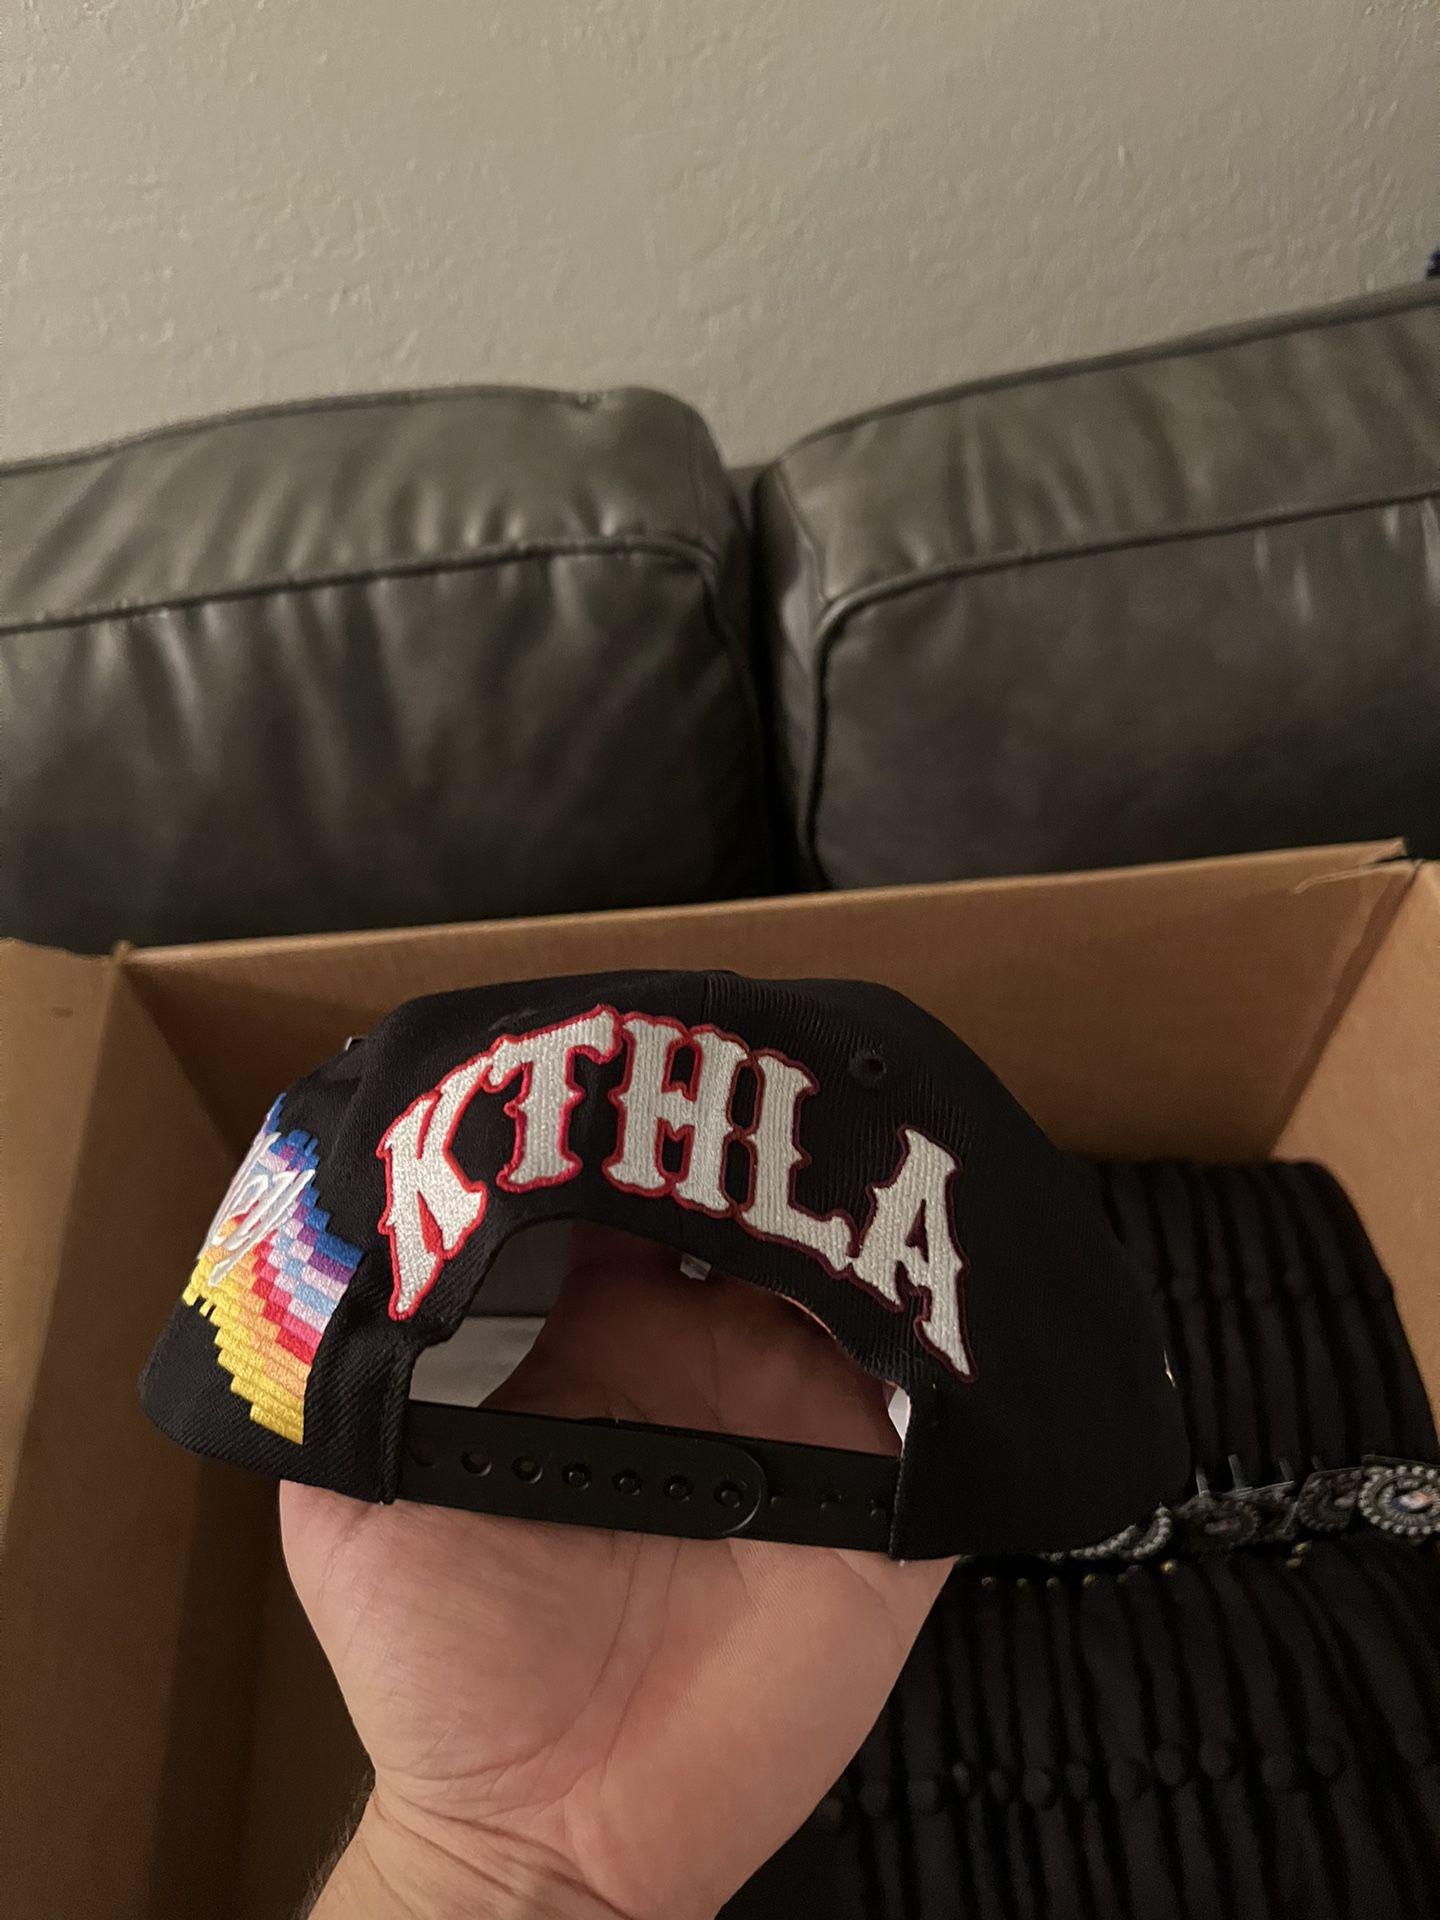 KTHLA Phoenix Suns Snapback for Sale in Scottsdale, AZ - OfferUp